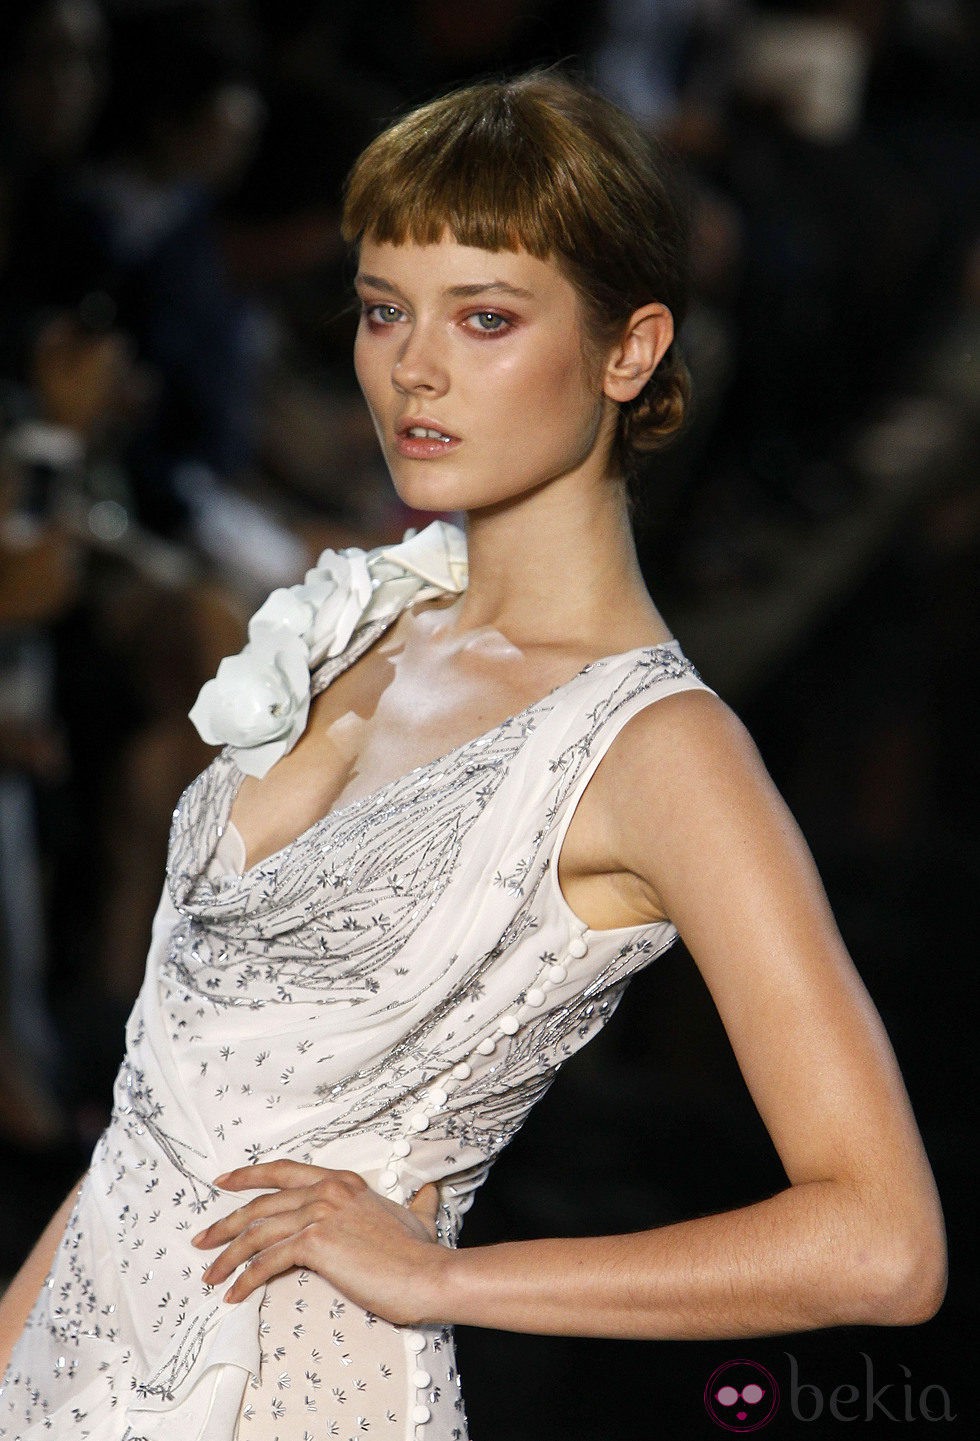 Vestido de seda blanca de John Galliano, colección primavera 2012